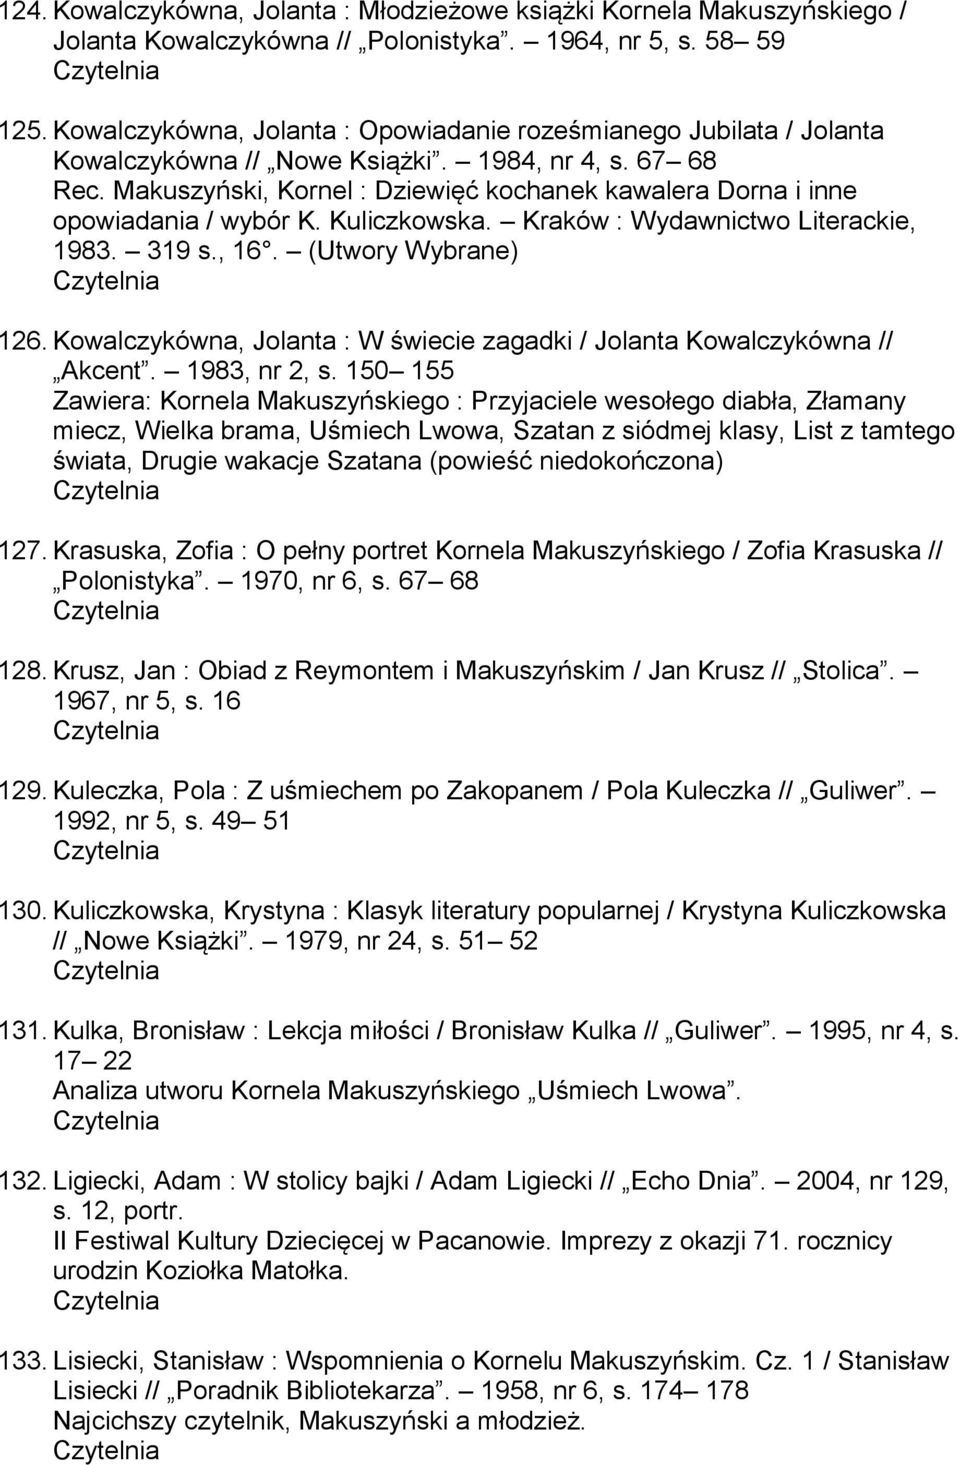 Makuszyński, Kornel : Dziewięć kochanek kawalera Dorna i inne opowiadania / wybór K. Kuliczkowska. Kraków : Wydawnictwo Literackie, 1983. 319 s., 16. (Utwory Wybrane) 126.